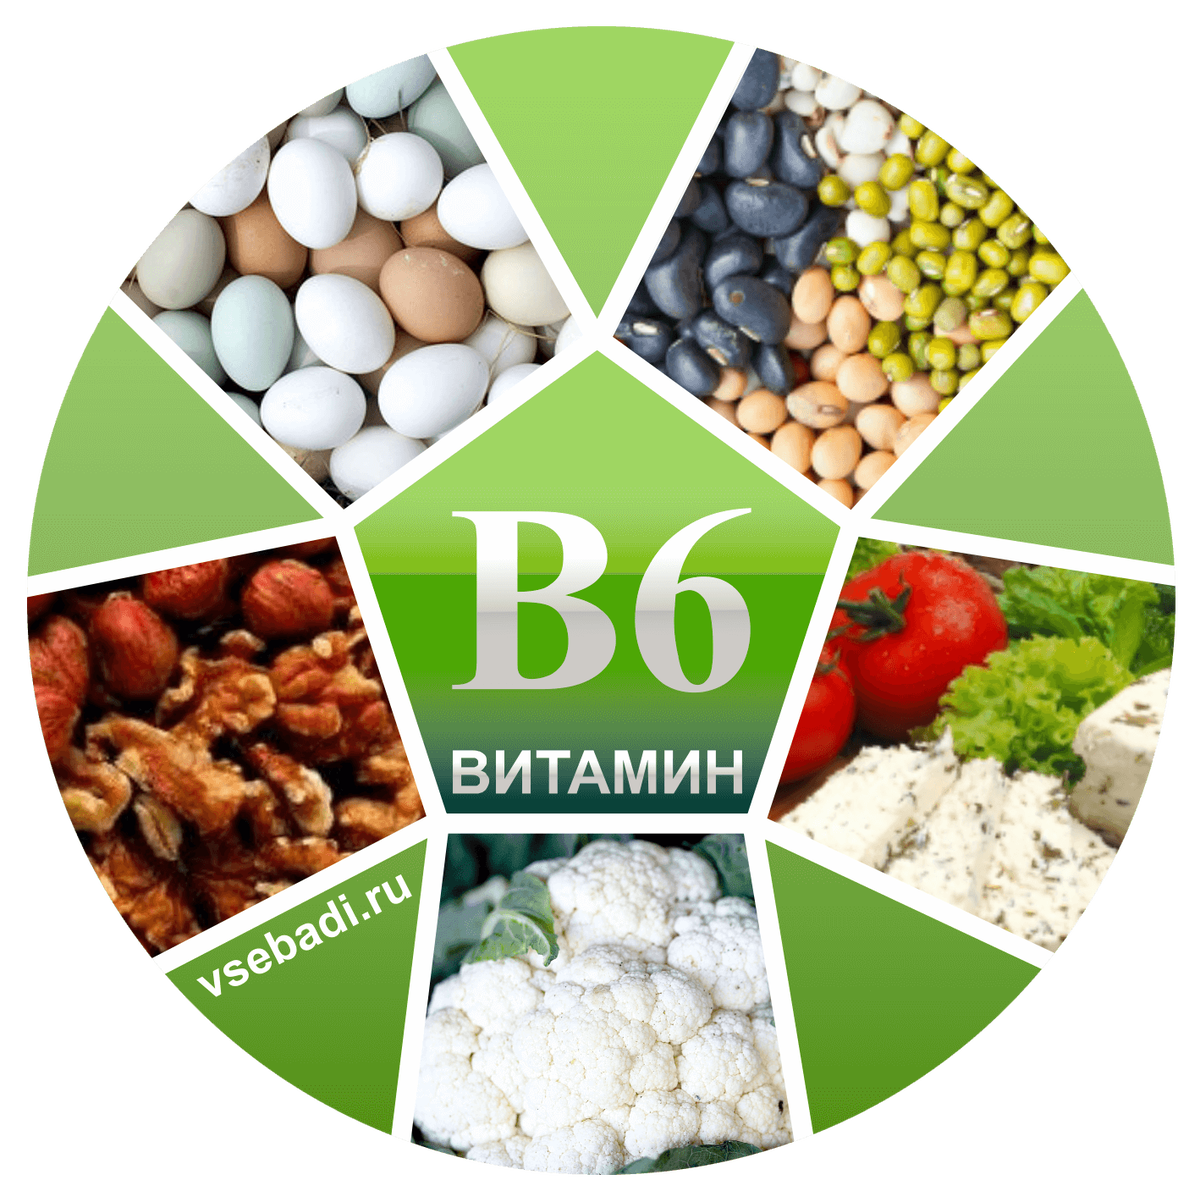 Б6 как называется. Витамин b6 название витамина. Витамины группы б6. Витамин b6 пиридоксин. Витамин b6 источники витамина.